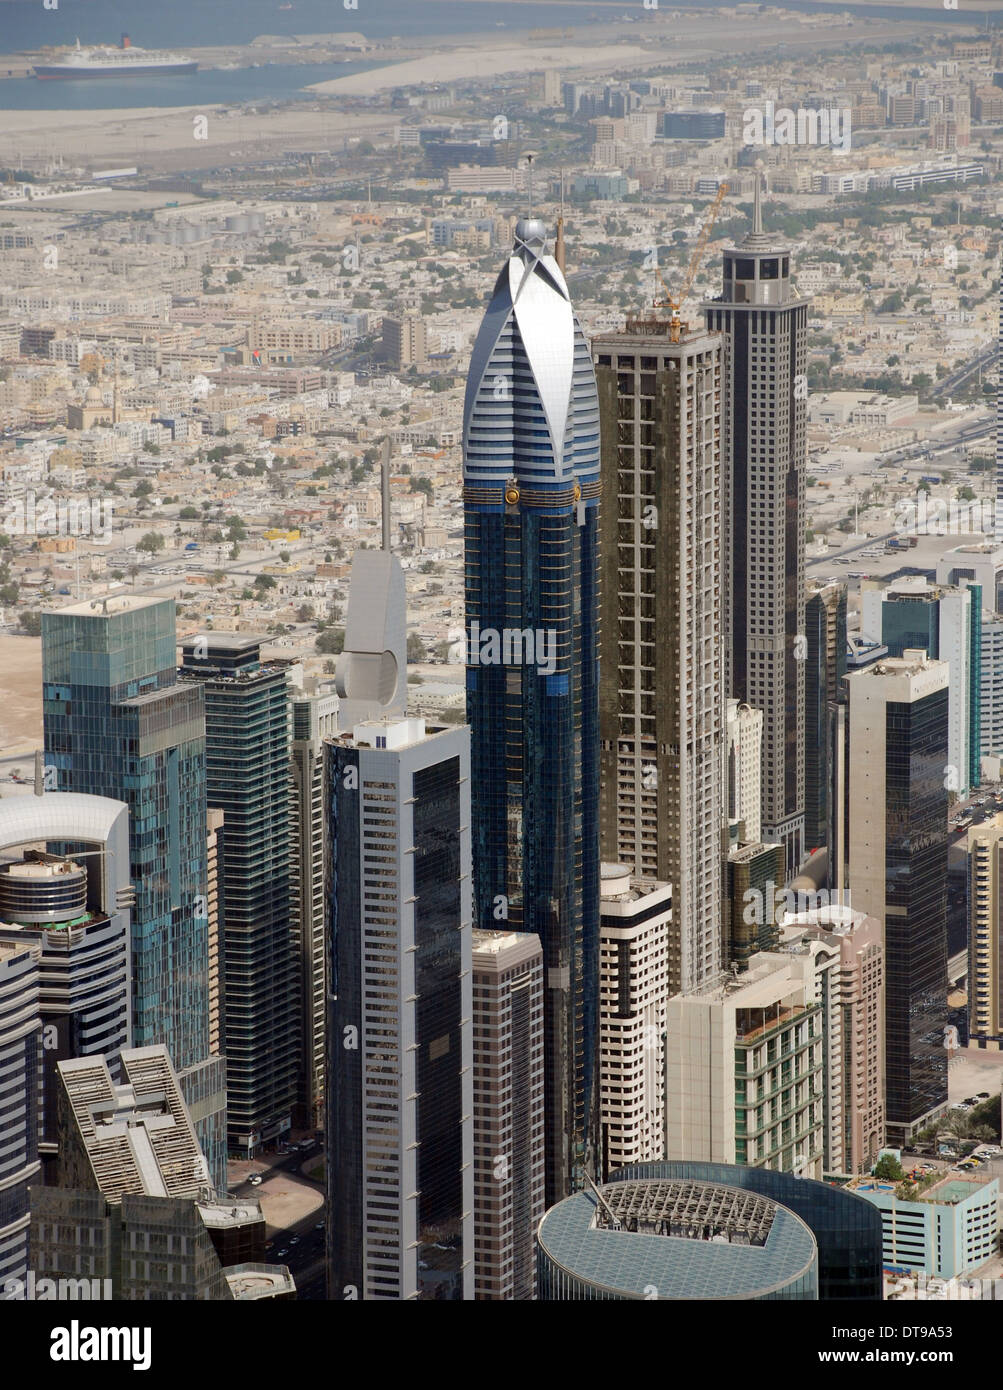 Vue aérienne de Dubaï aux Émirats arabes unis Banque D'Images